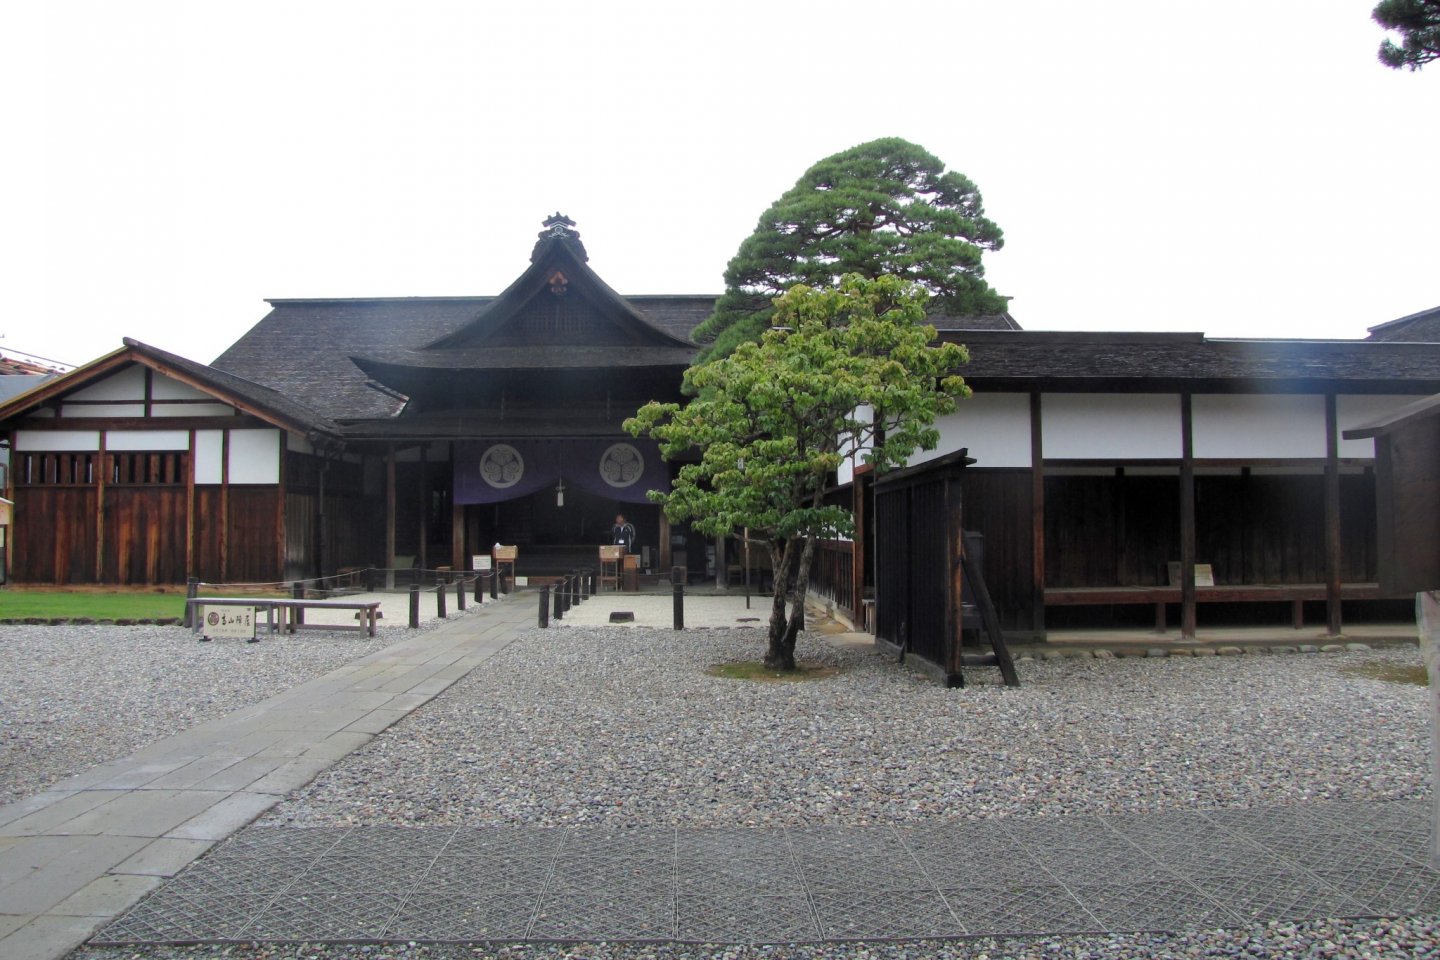 The entrance to the Takayama Jinya